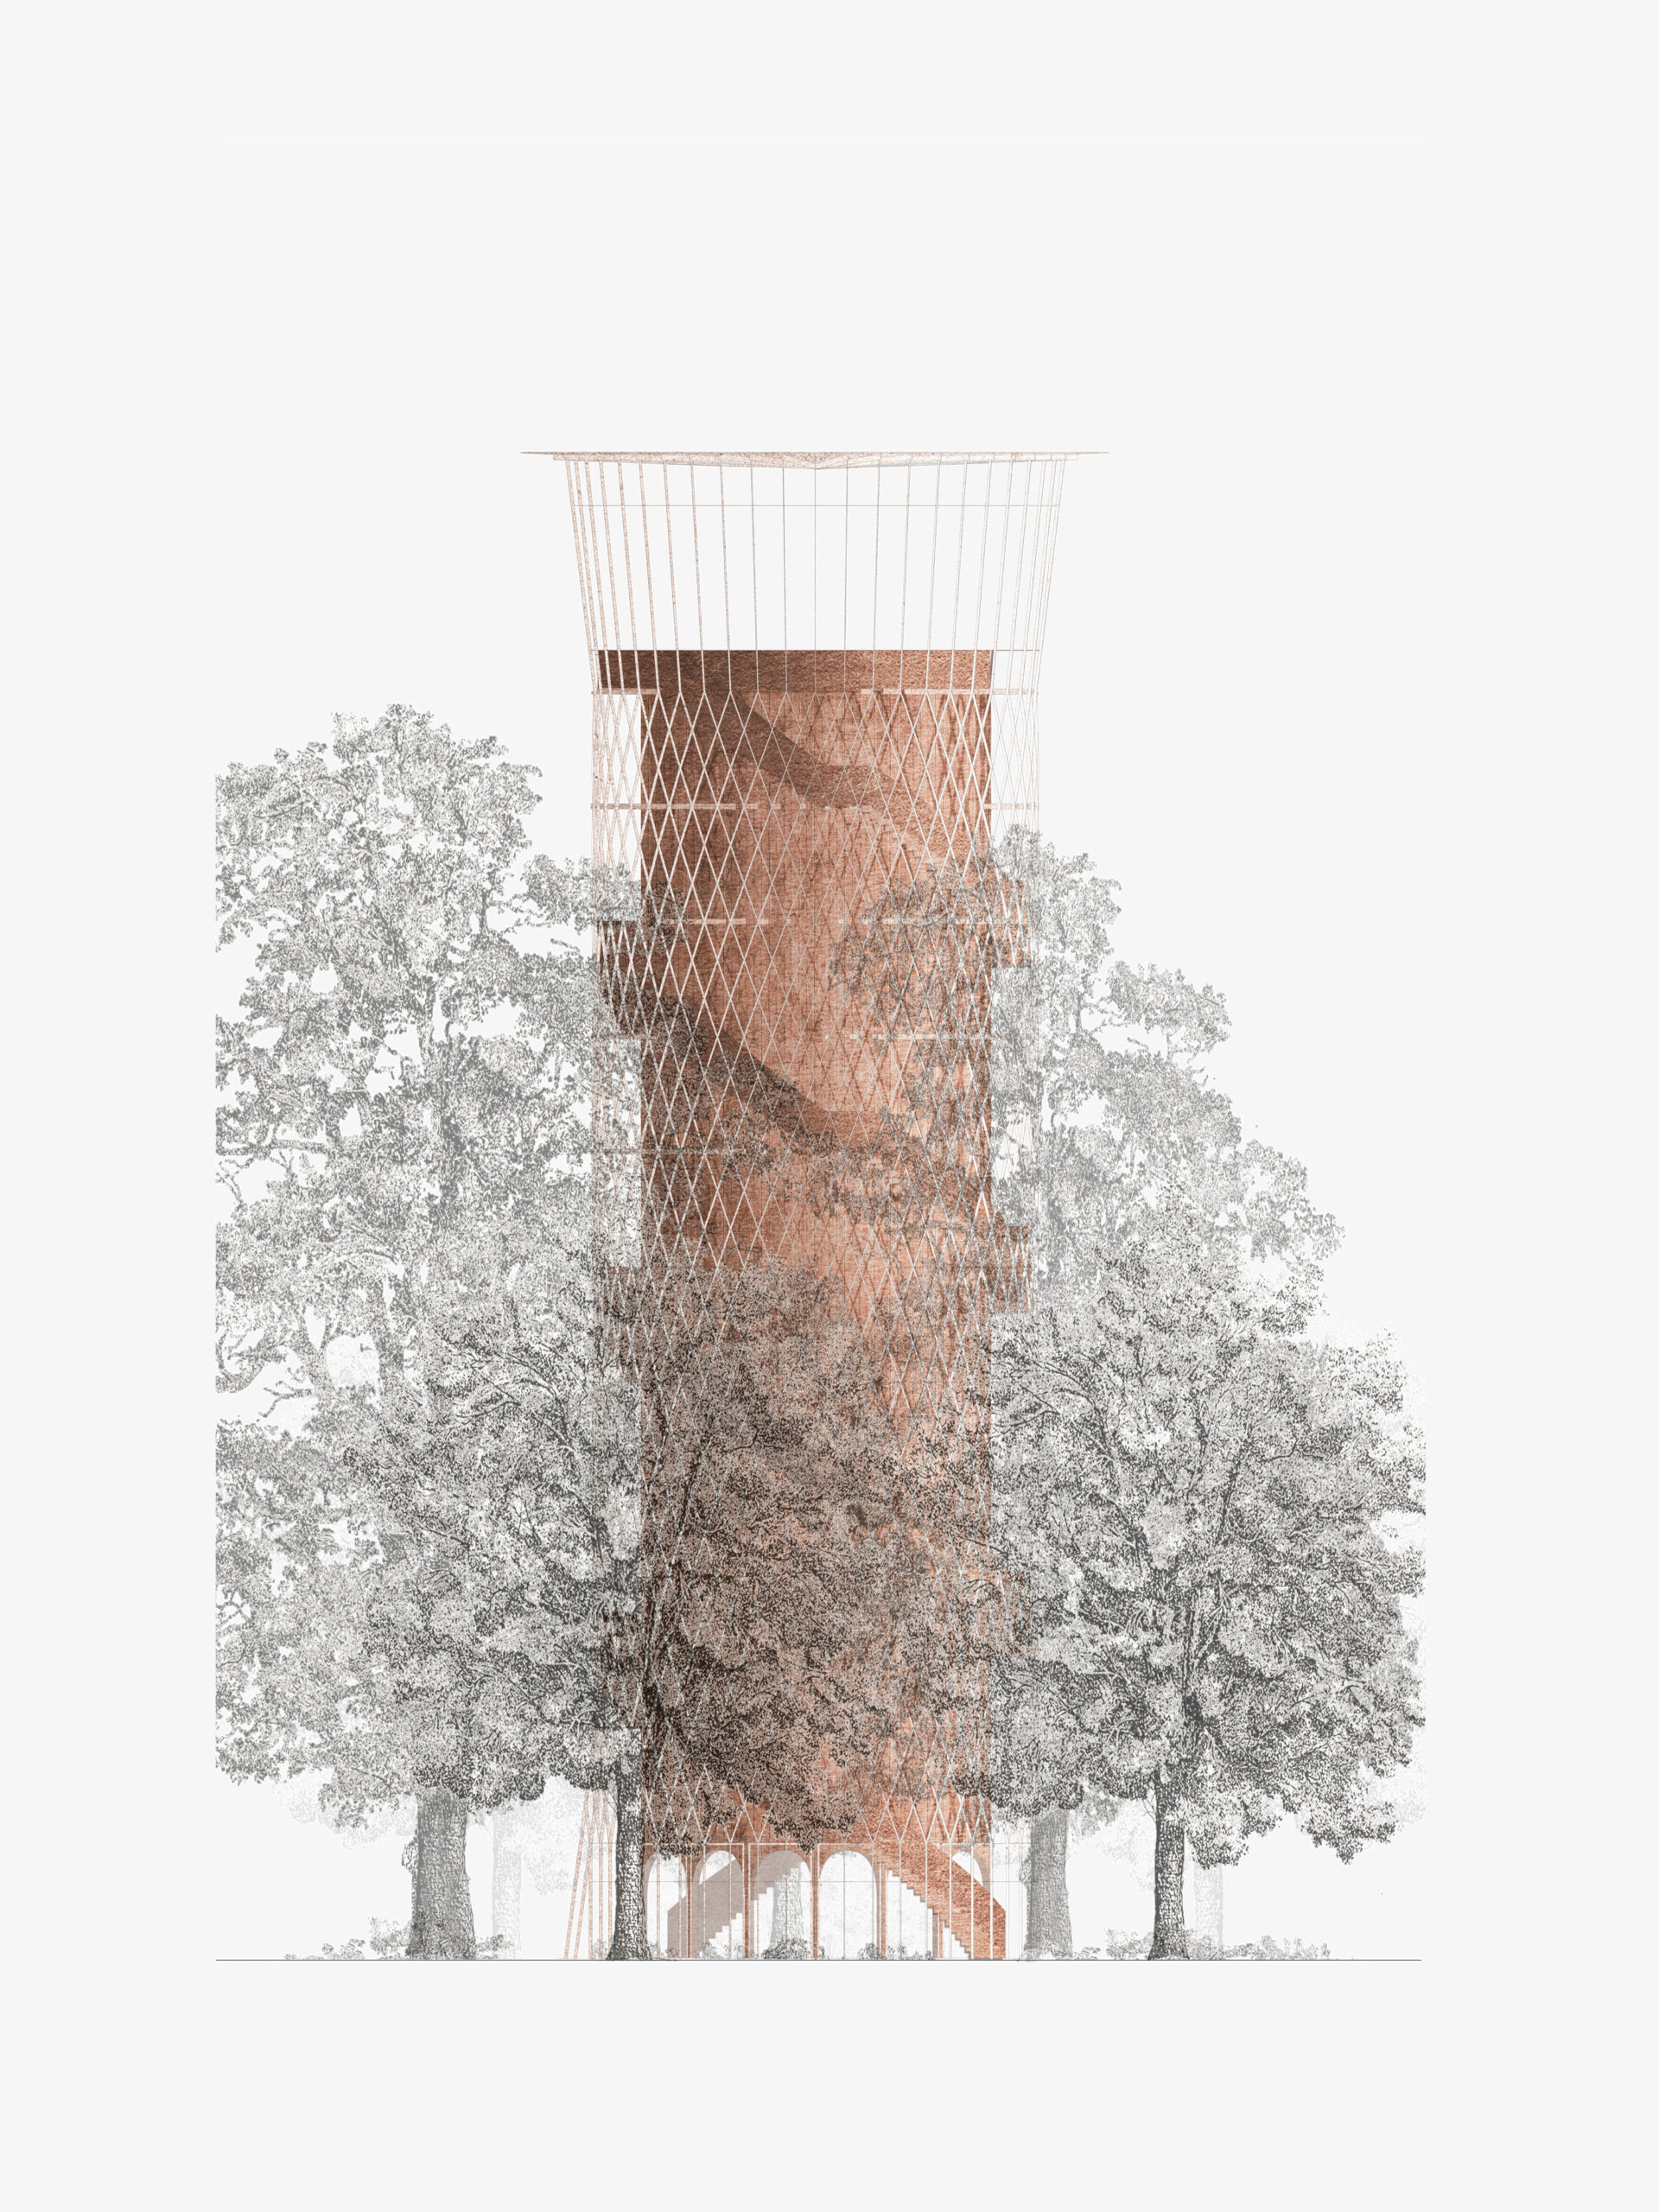 Michael-Becker-Architects-Architekten-Wasserturm-Donauwoerth-Ansicht